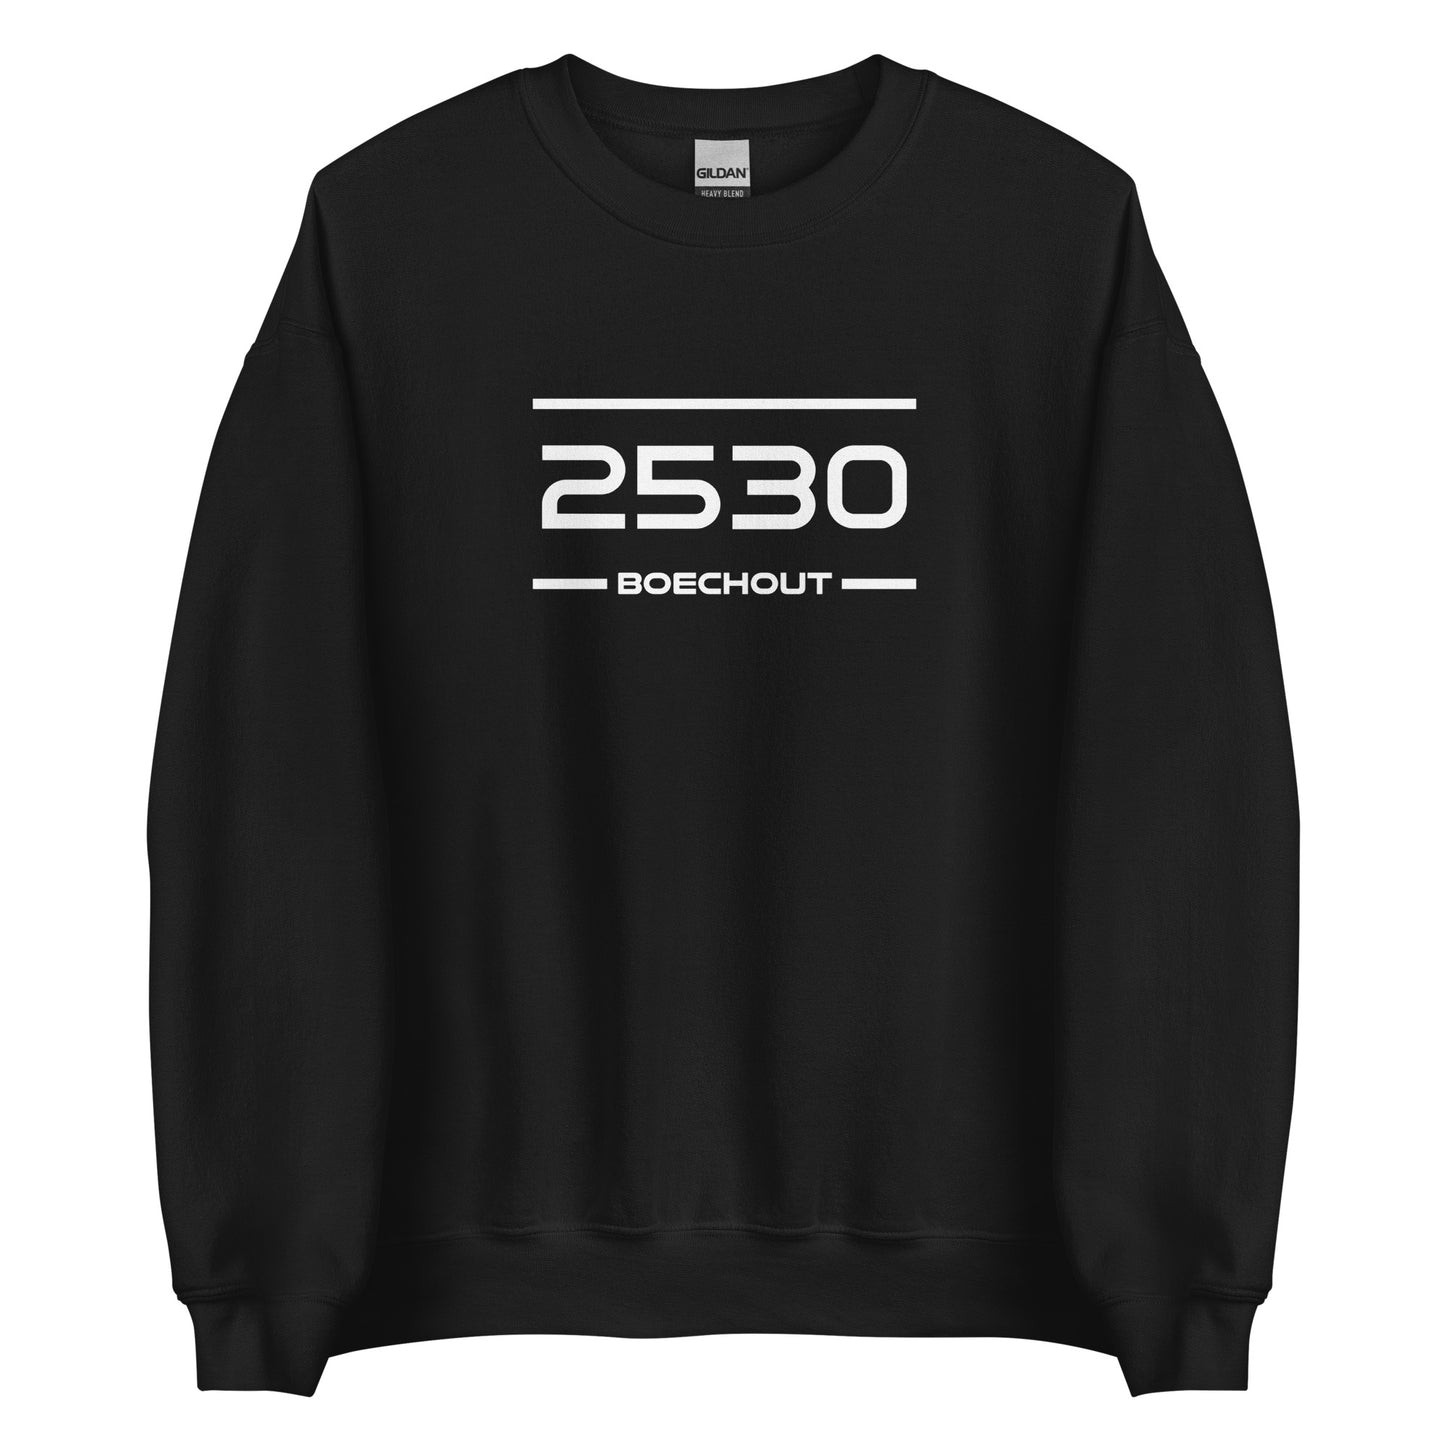 Sweater - 2530 - Boechout (M/V)